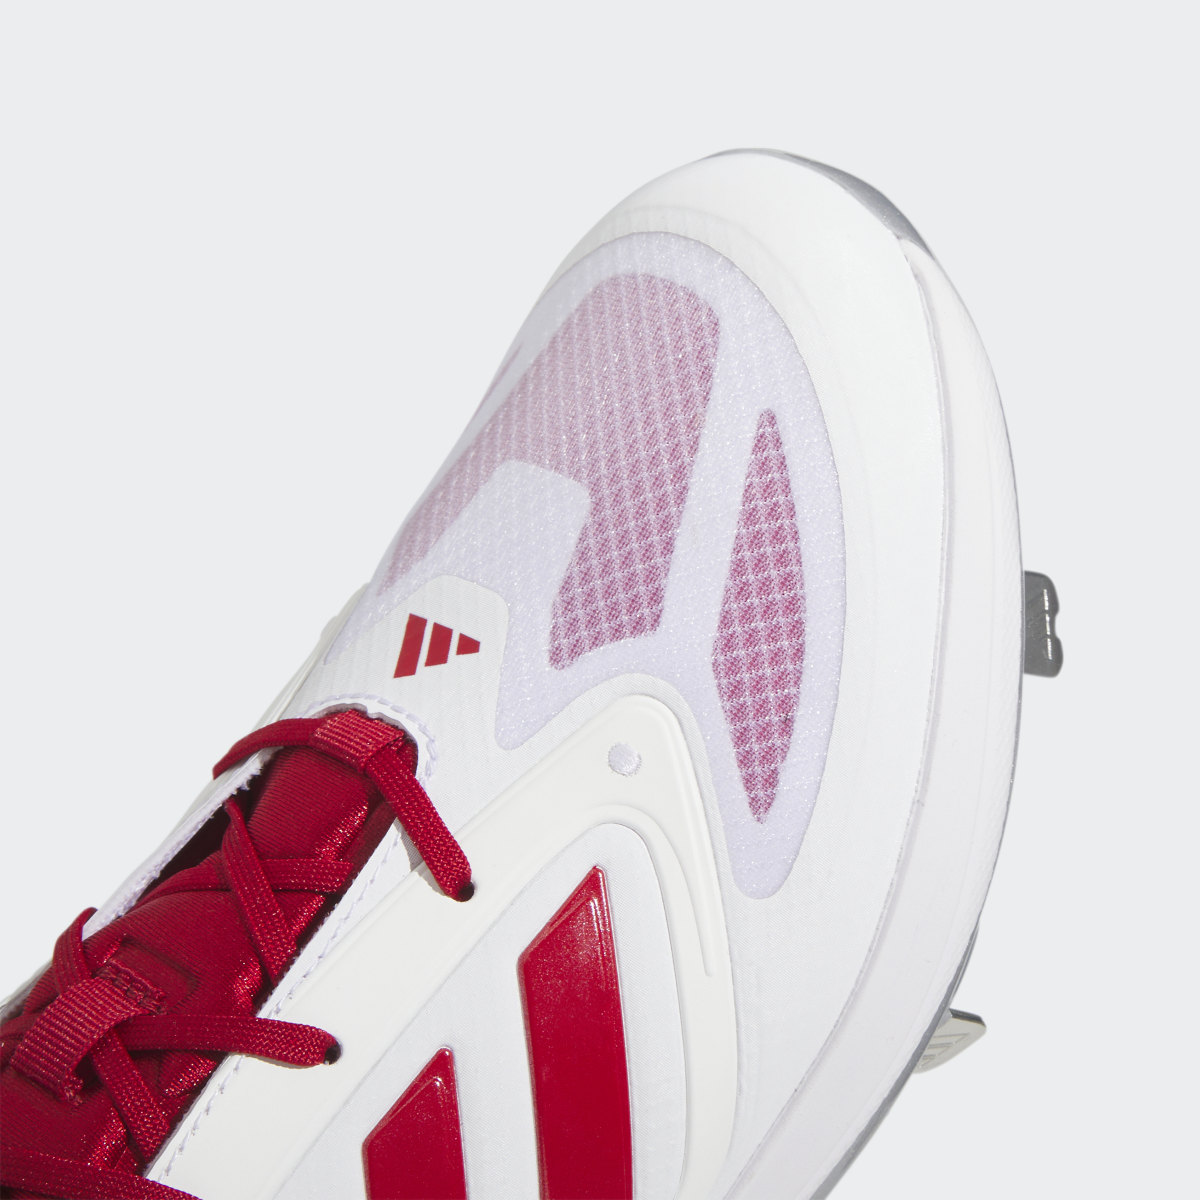 Adidas Adizero PureHustle 3 Elite Cleats. 8